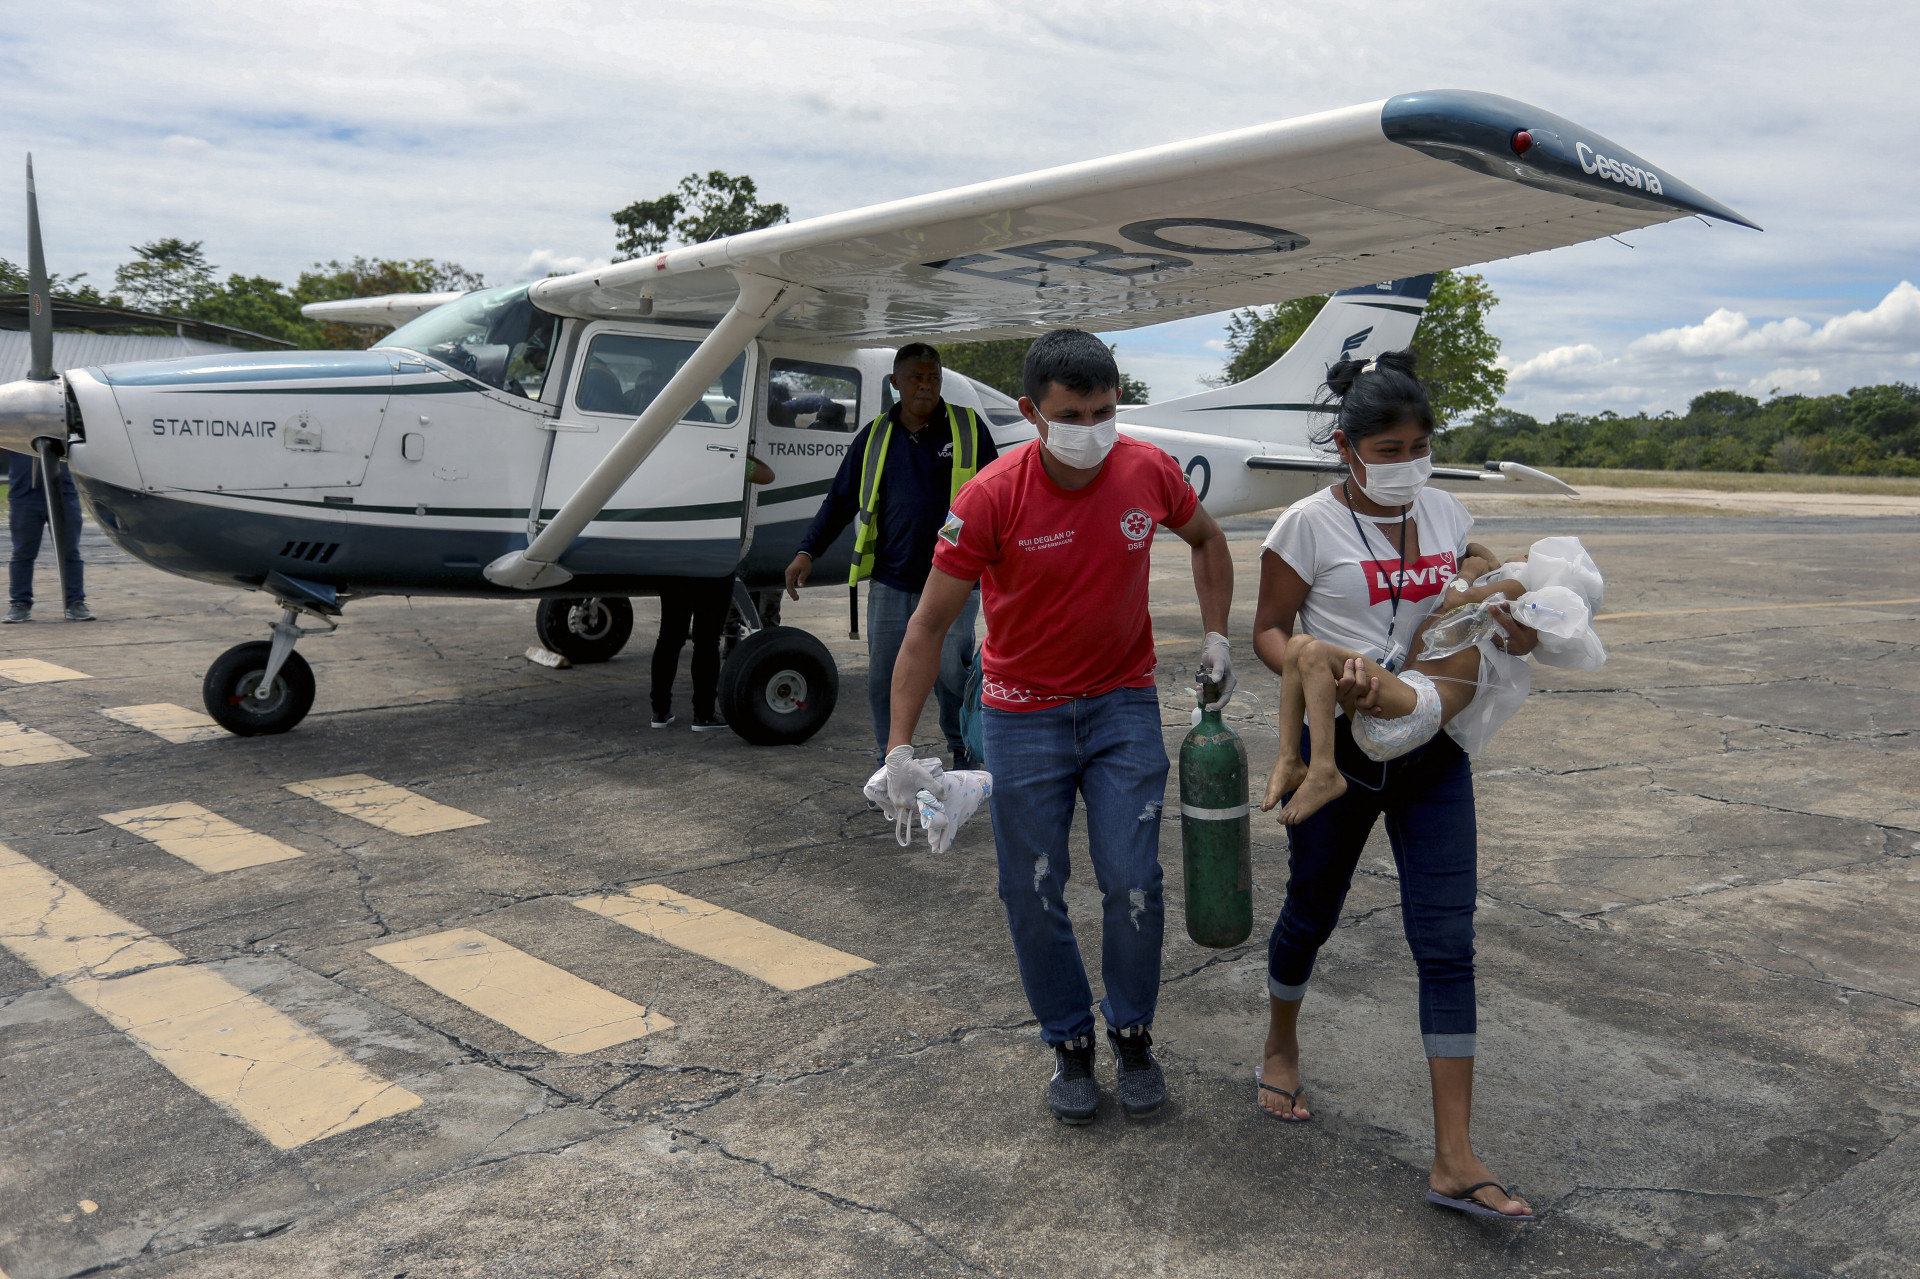 Os casos de desnutrição e malária na região dispararam nas últimas semanas em território Yanomami; Lula declarou emergência de saúde (Foto: MICHAEL DANTAS/AFP)